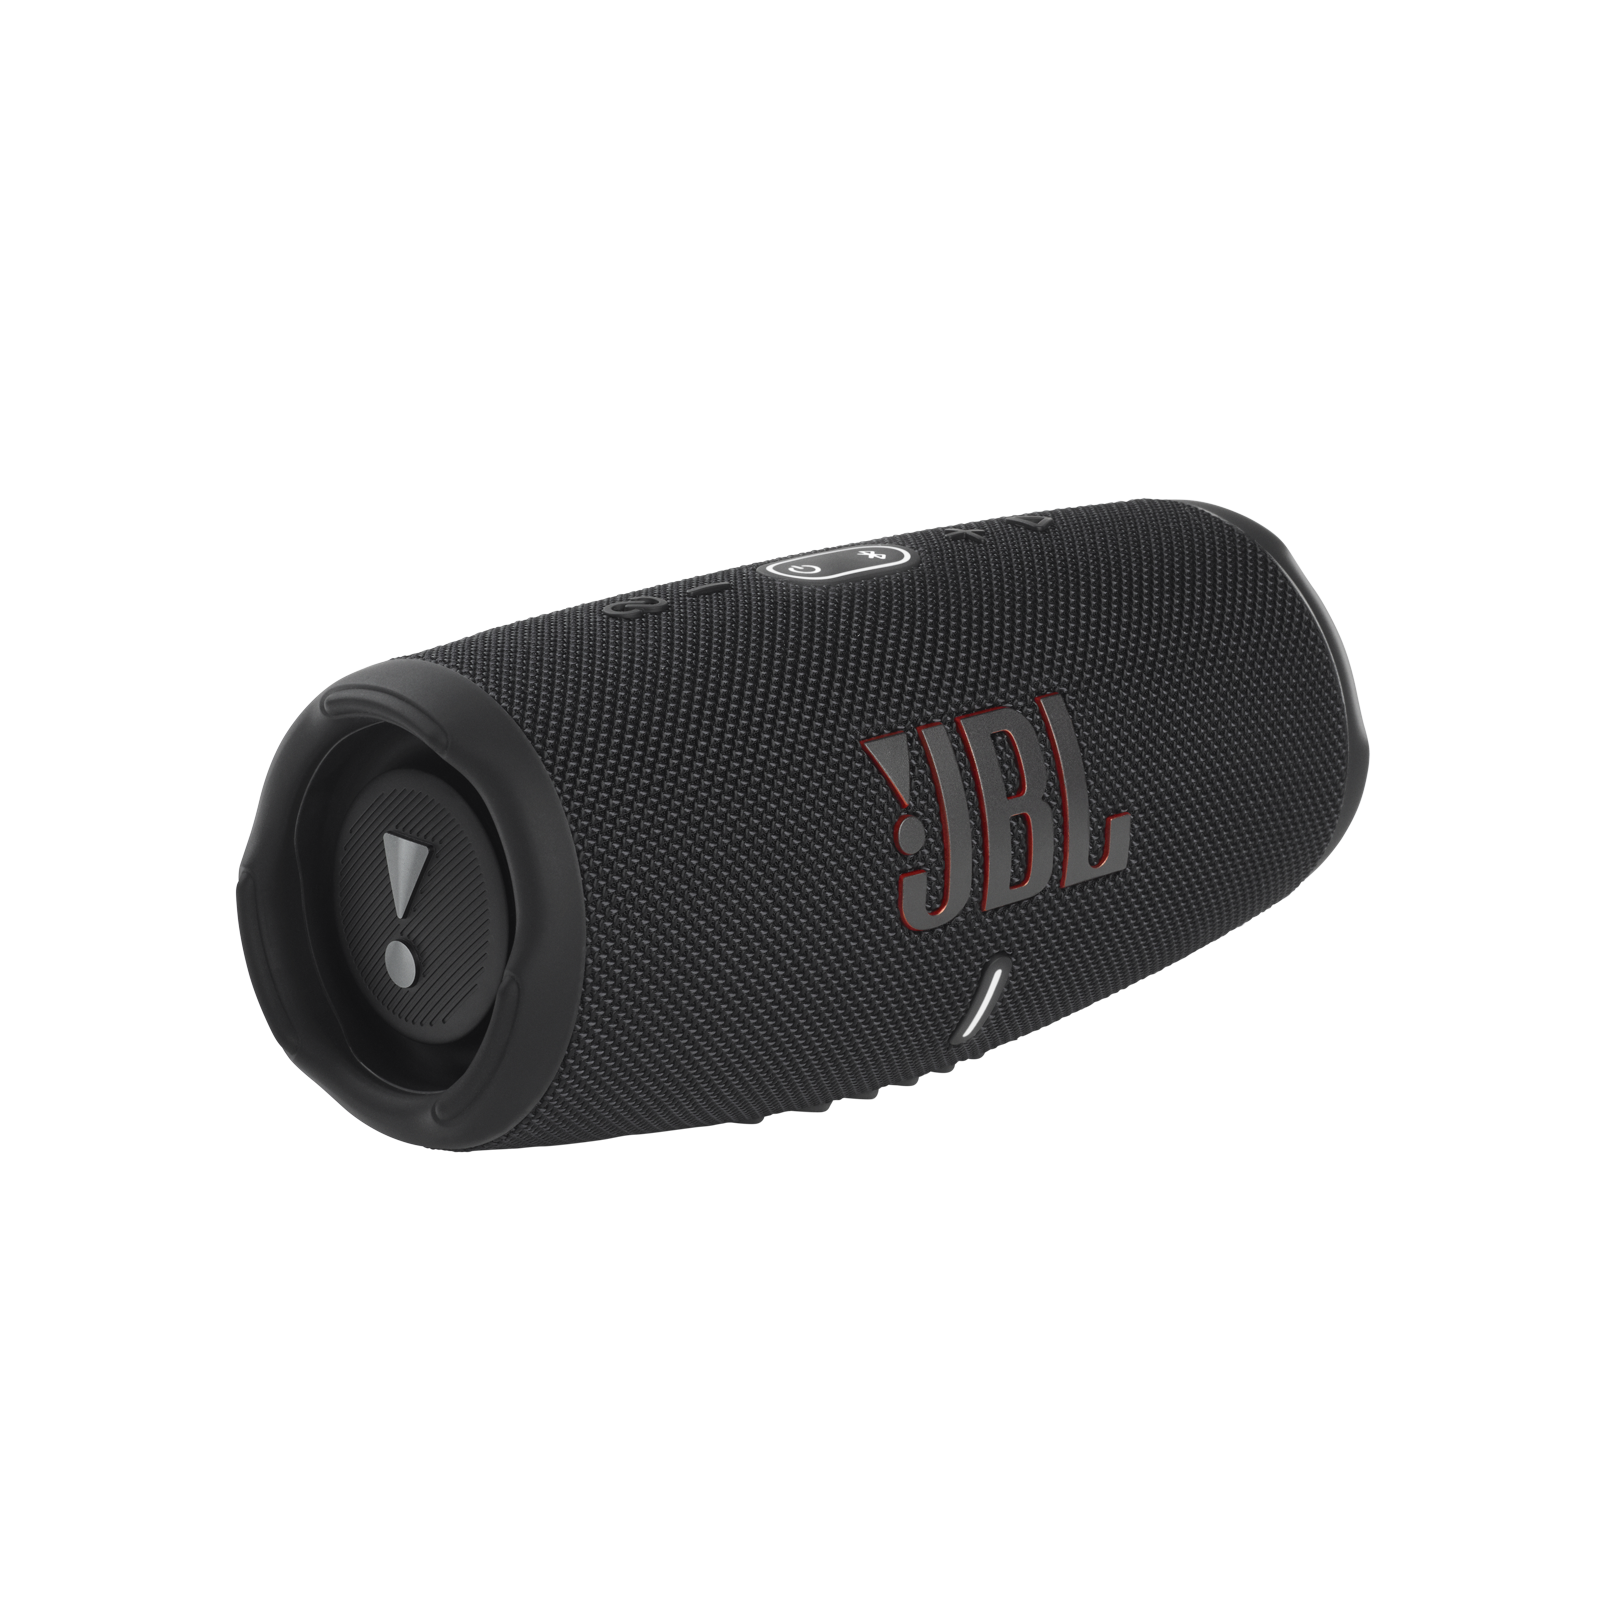 JBL Charge 5 Portable Waterproof Bluetooth Speaker with Powerbank, Black - image 1 of 7